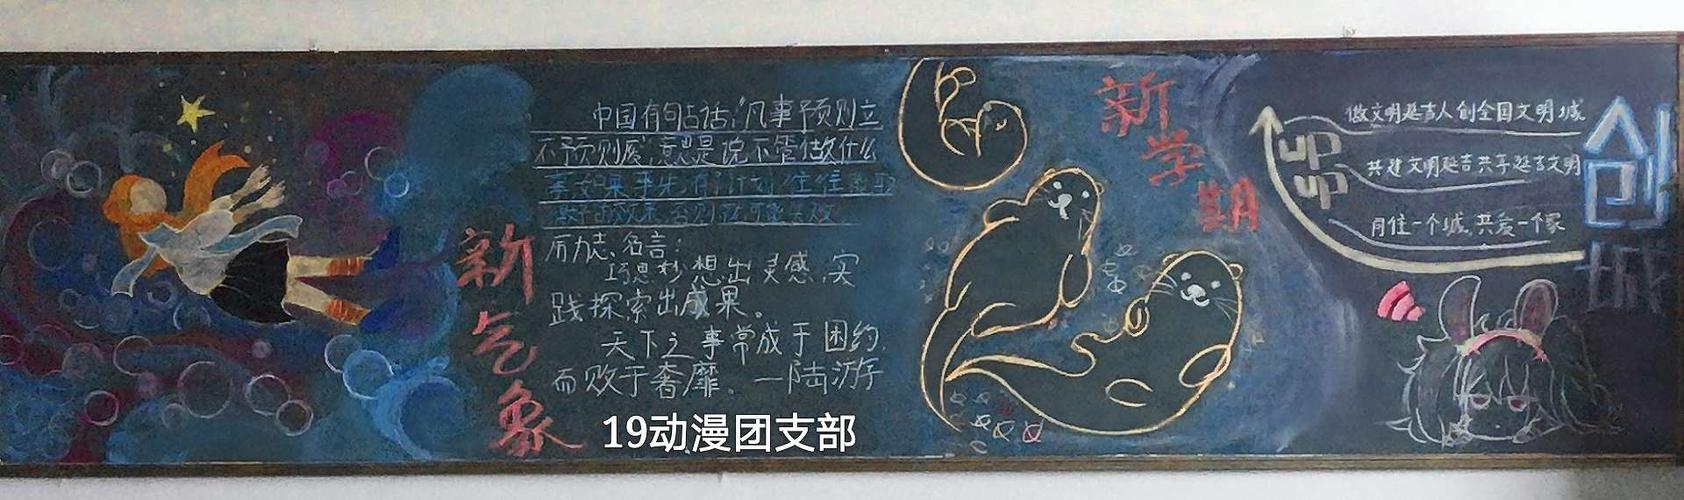 延吉市职业高级中学1918级黑板报